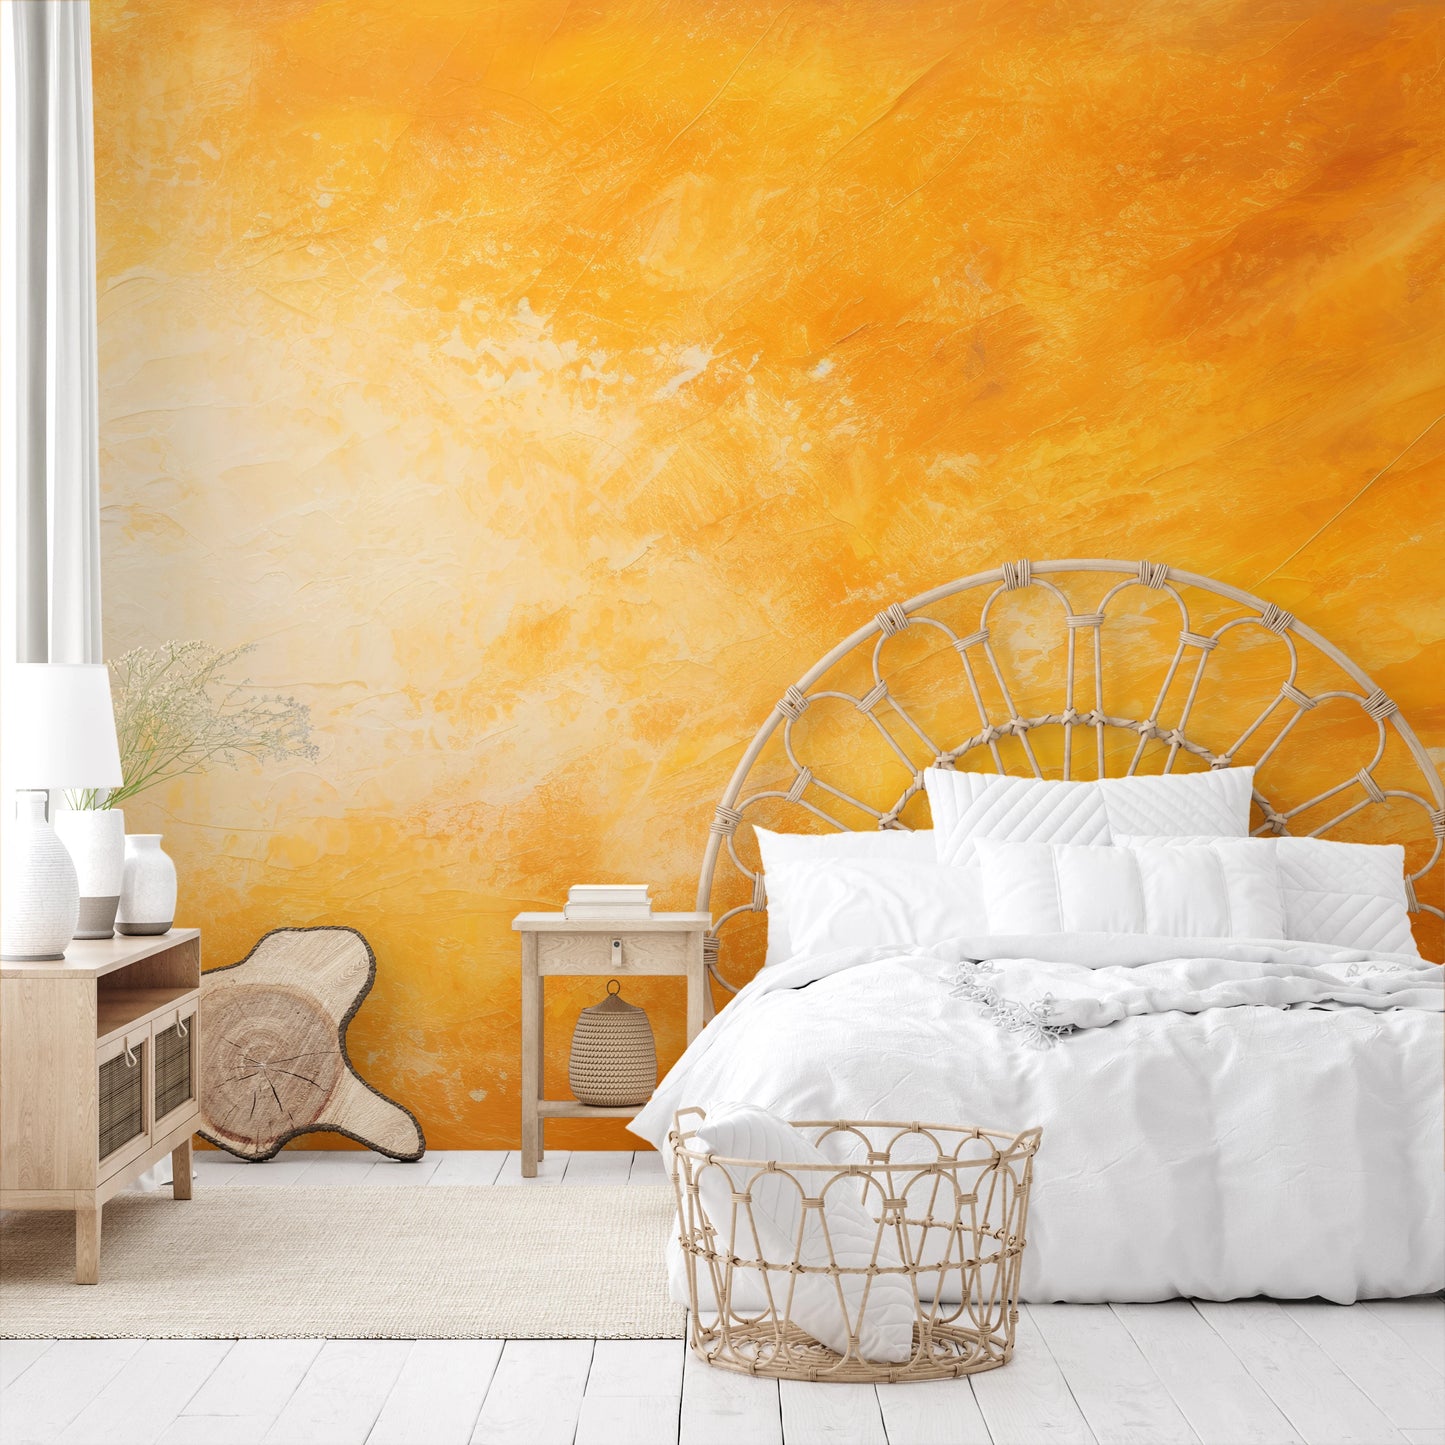 Fototapeta malowana o nazwie Golden Blaze pokazana w aranżacji wnętrza.